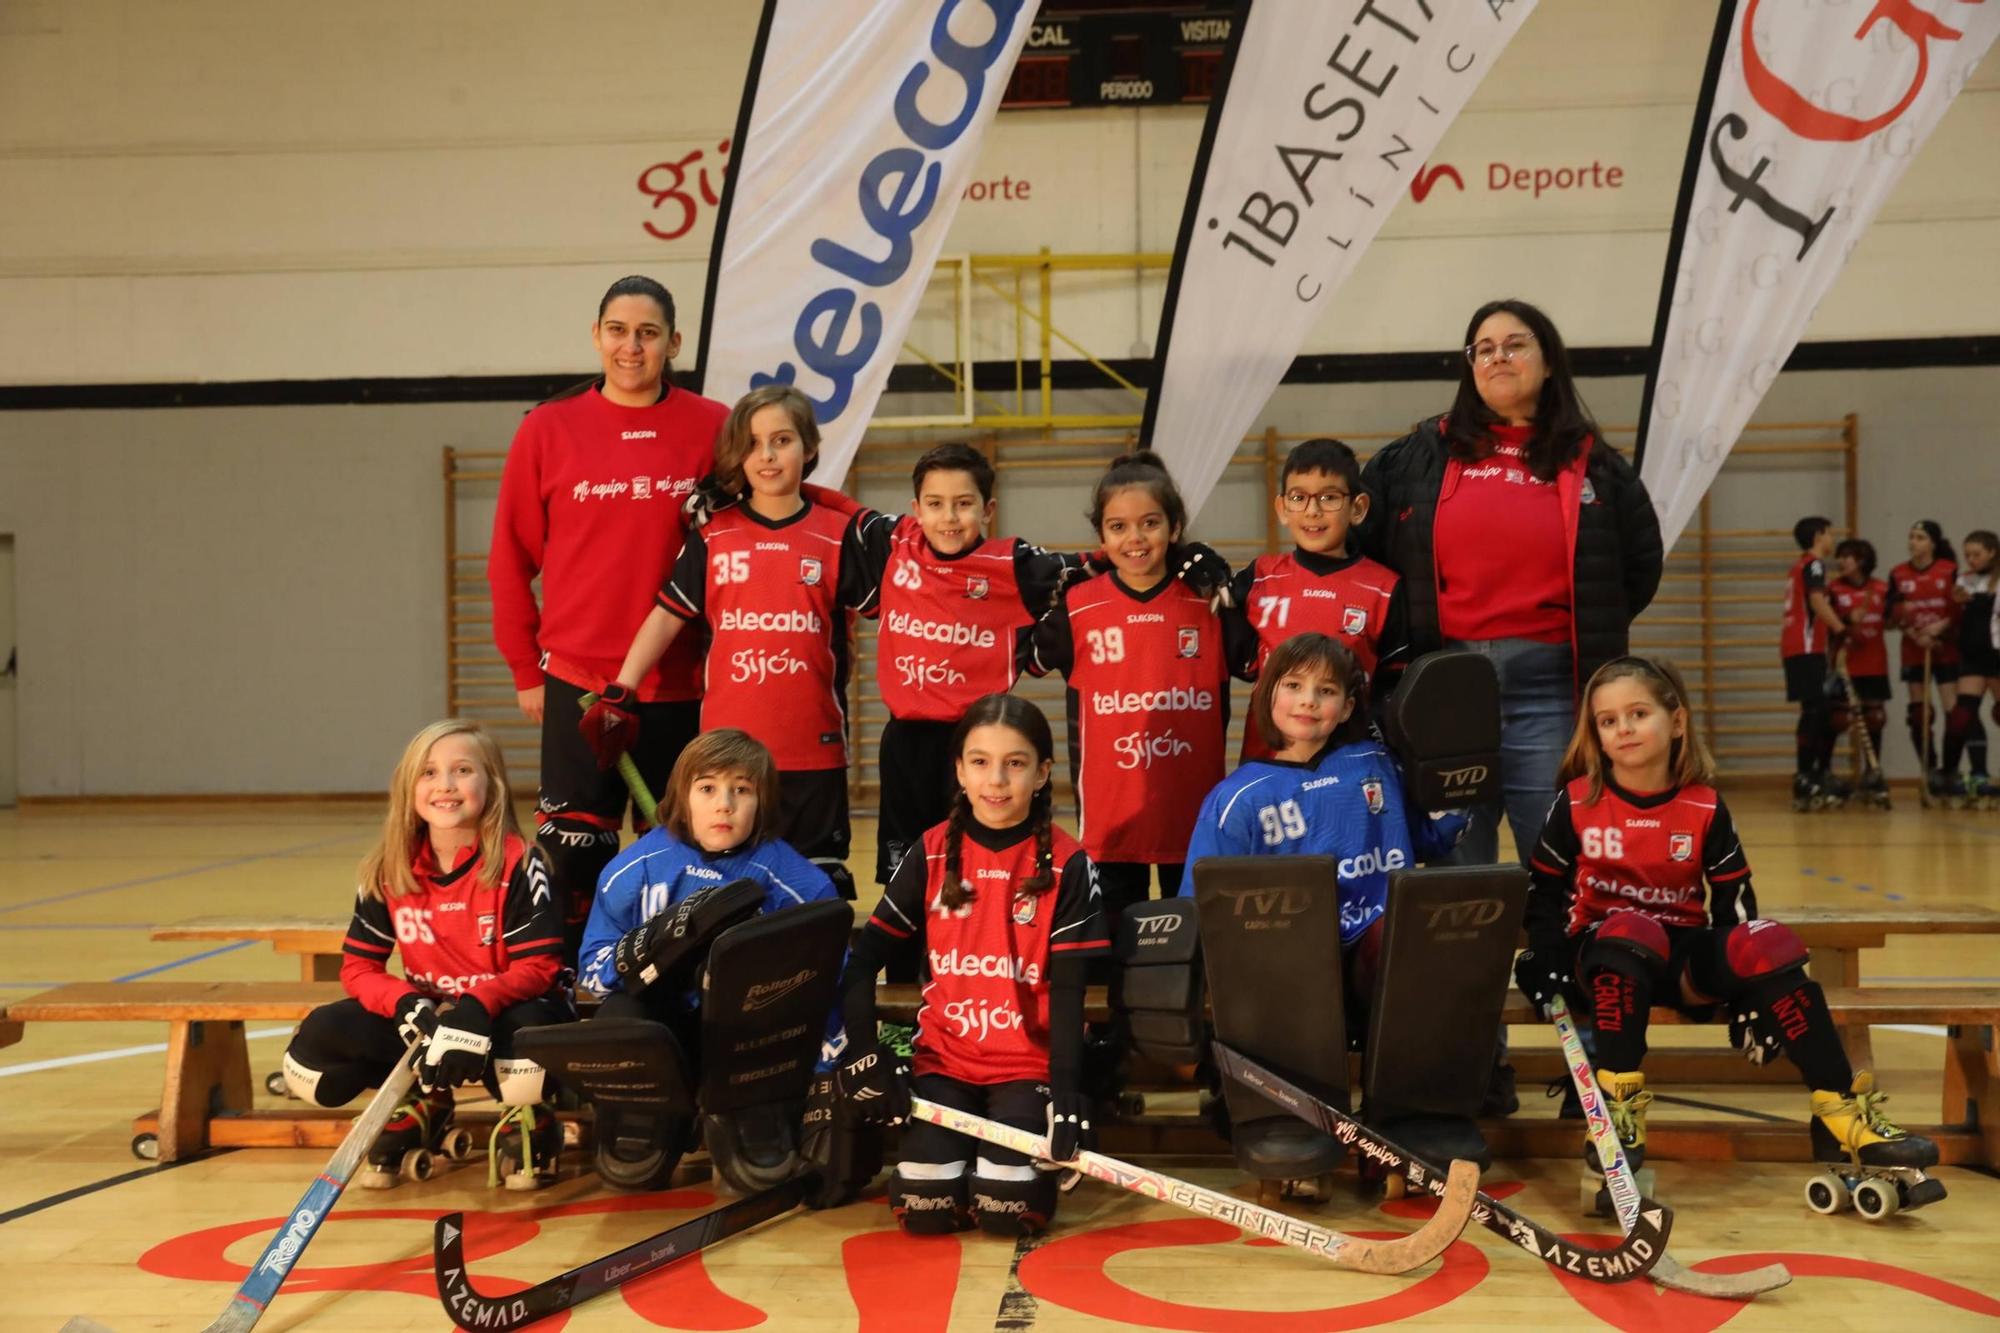 Presentación de los equipos del Telecable de hockey sobre patines